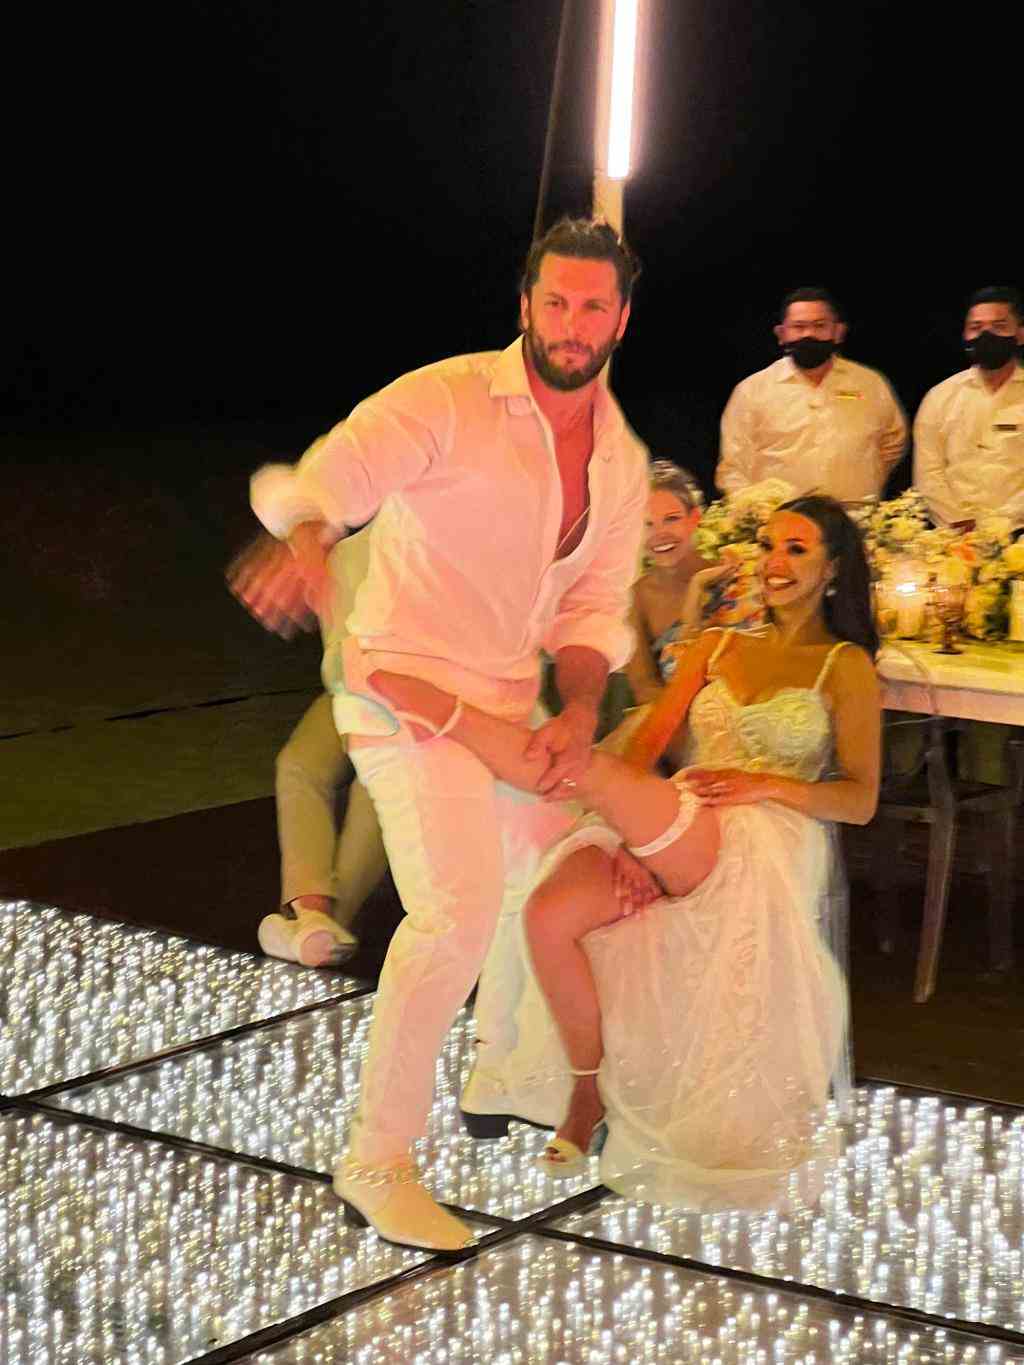 EXKLUSIV: Vanderpump Rules-Stars Scheana Shay und Brock Davies heiraten in Mexiko